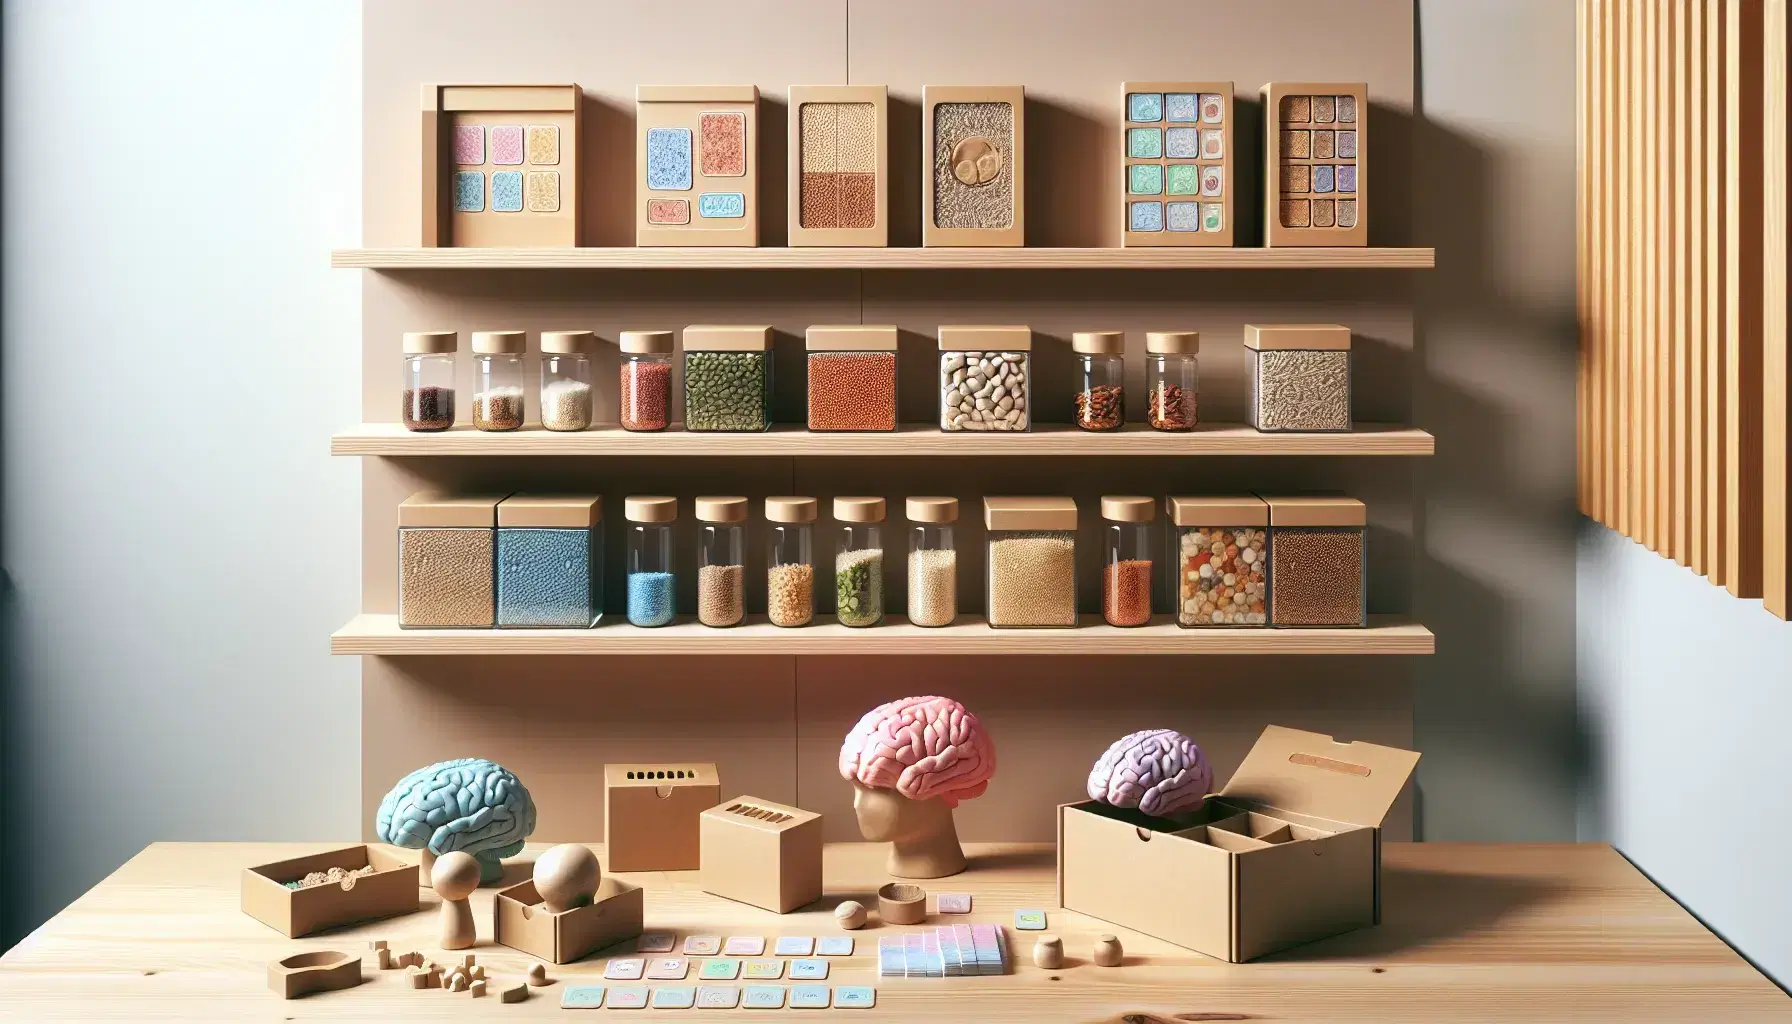 Estantes de madera con frascos de semillas y granos de colores, cajas de cartón, modelos de cerebro humano y un rompecabezas parcialmente armado en una mesa.